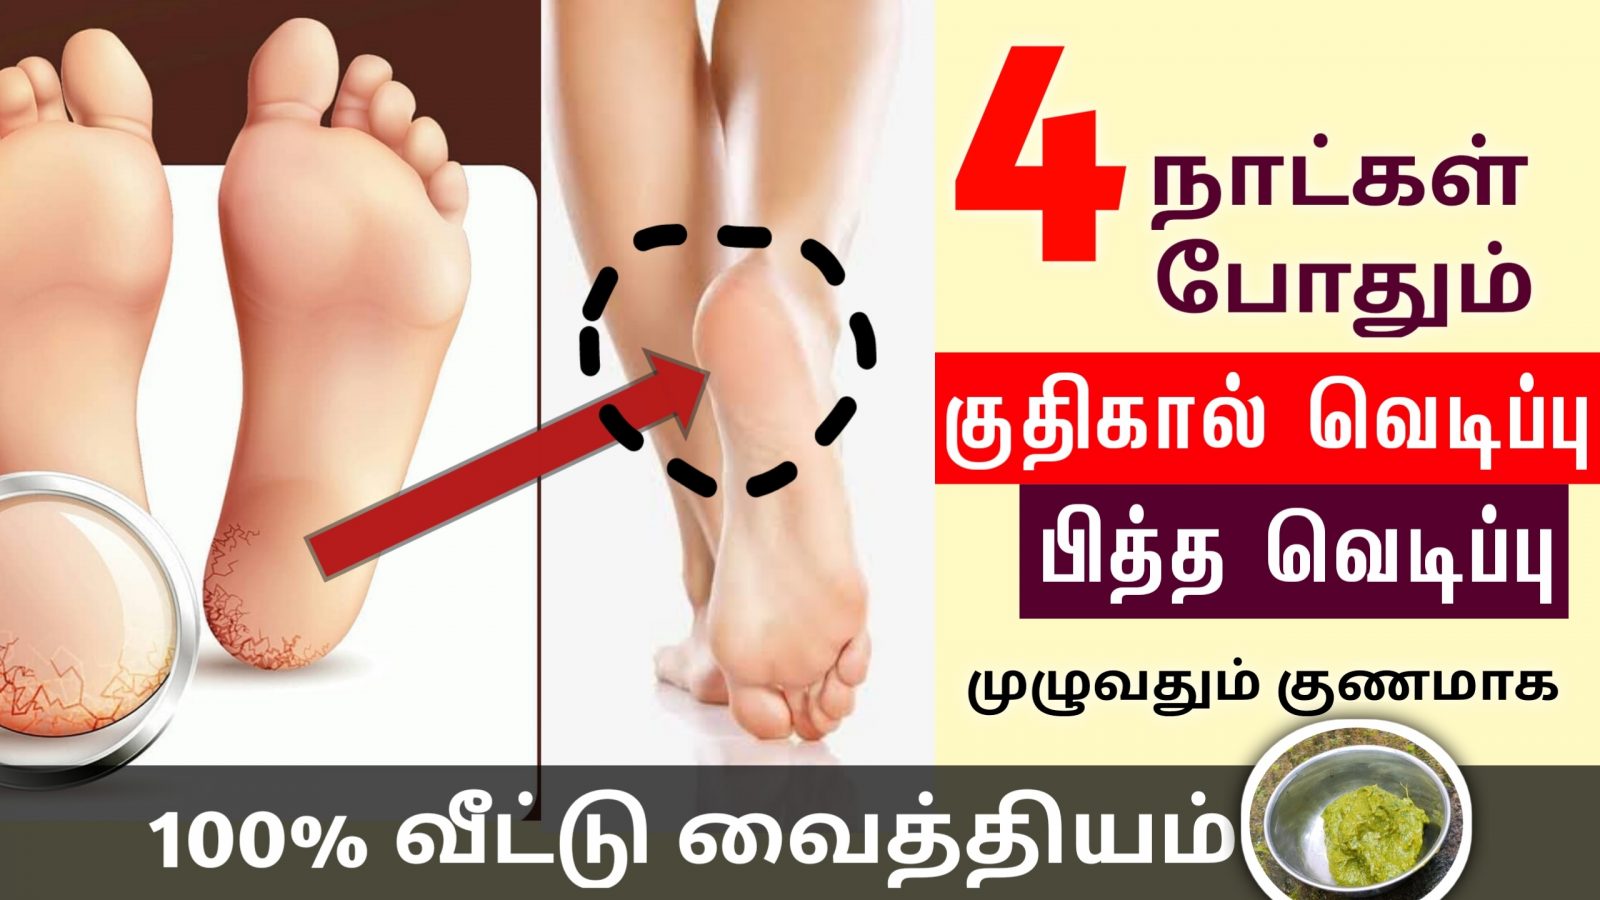 பாத வெடிப்பு நீங்க | Cracked Heels Home Remedies in Tamil | Patha vedippu tips | Next Day 360